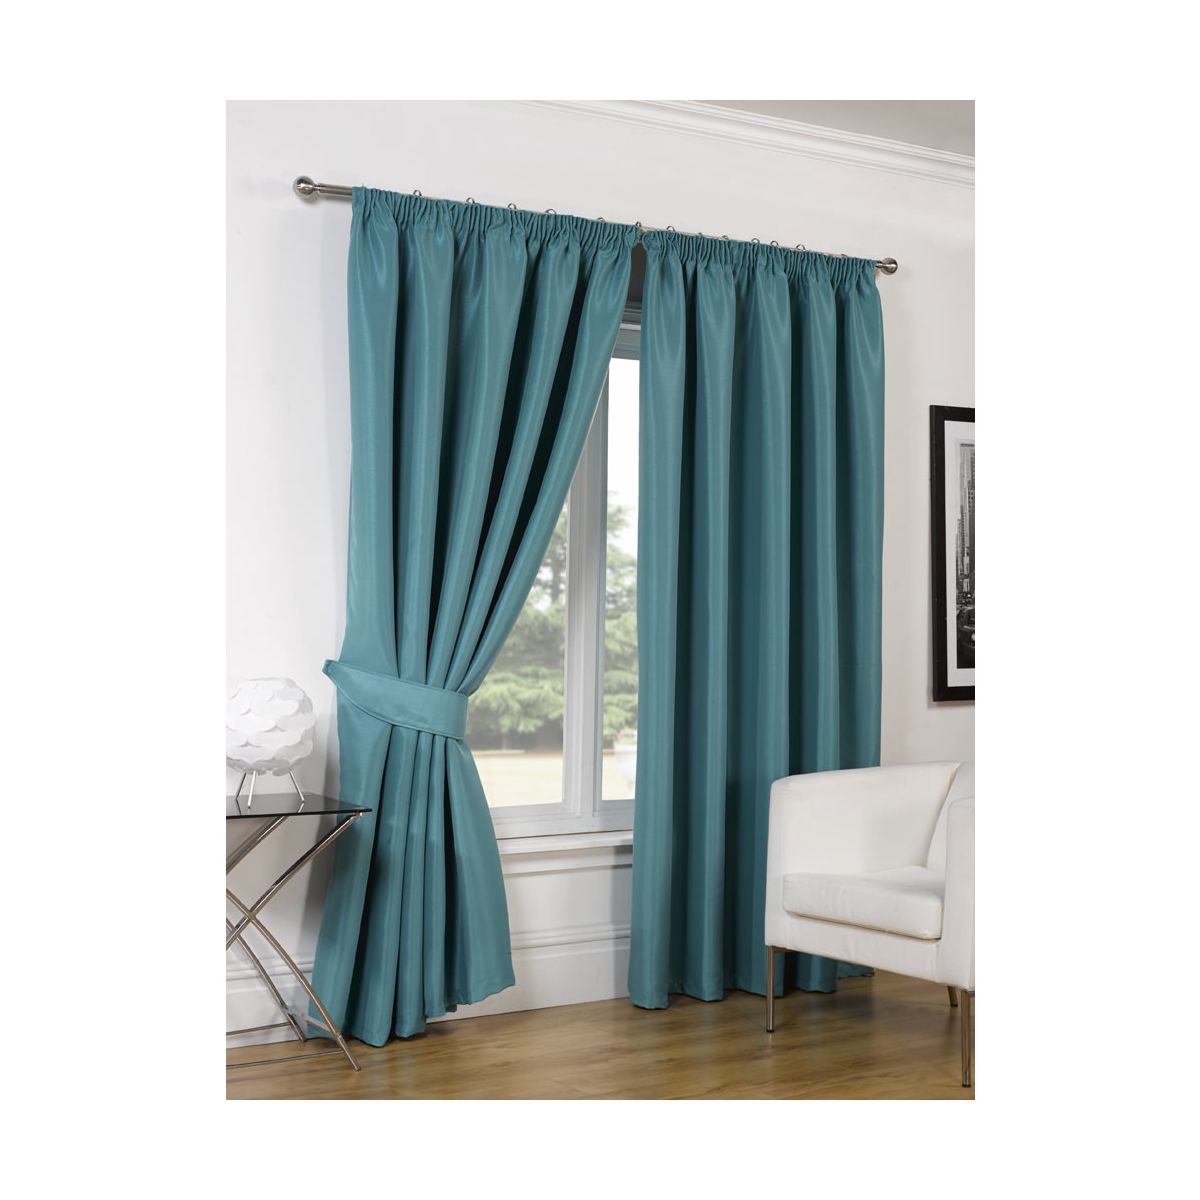 Faux Silk Blackout Curtains - Teal 46x54